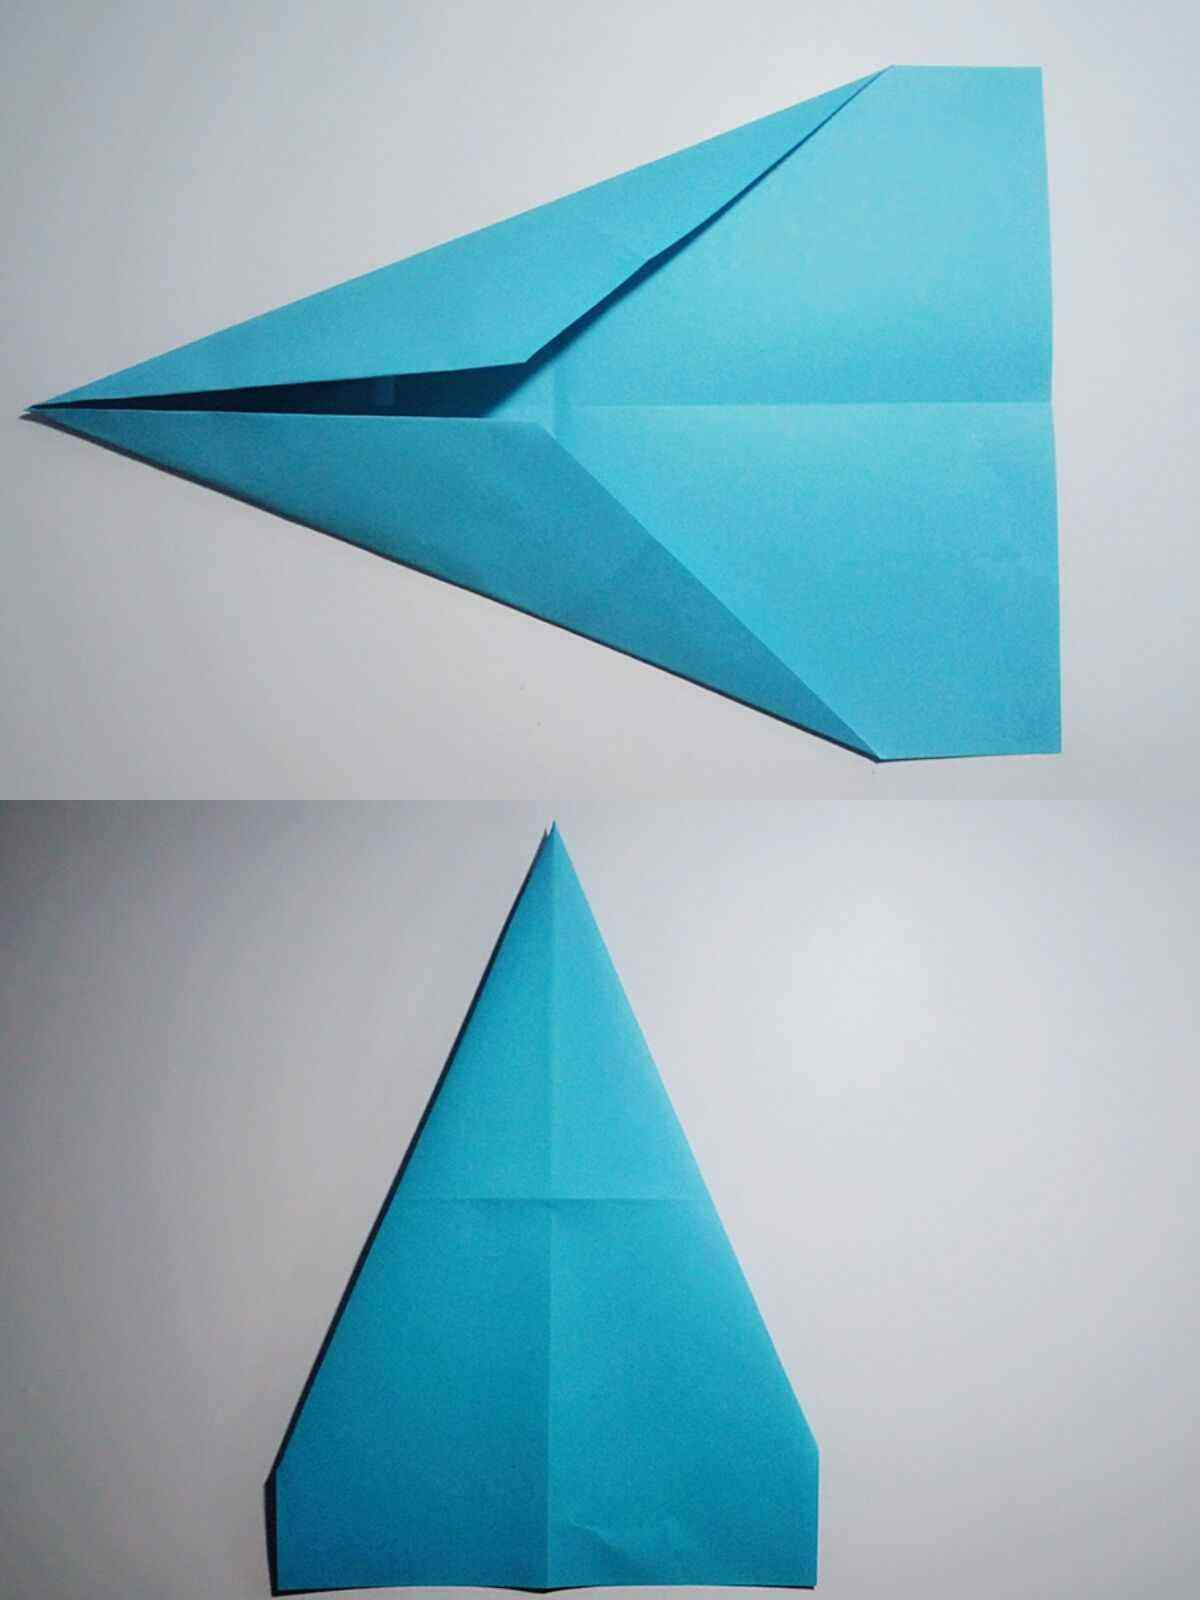 纸飞机怎么折飞得远飞得久正方形纸的简单介绍